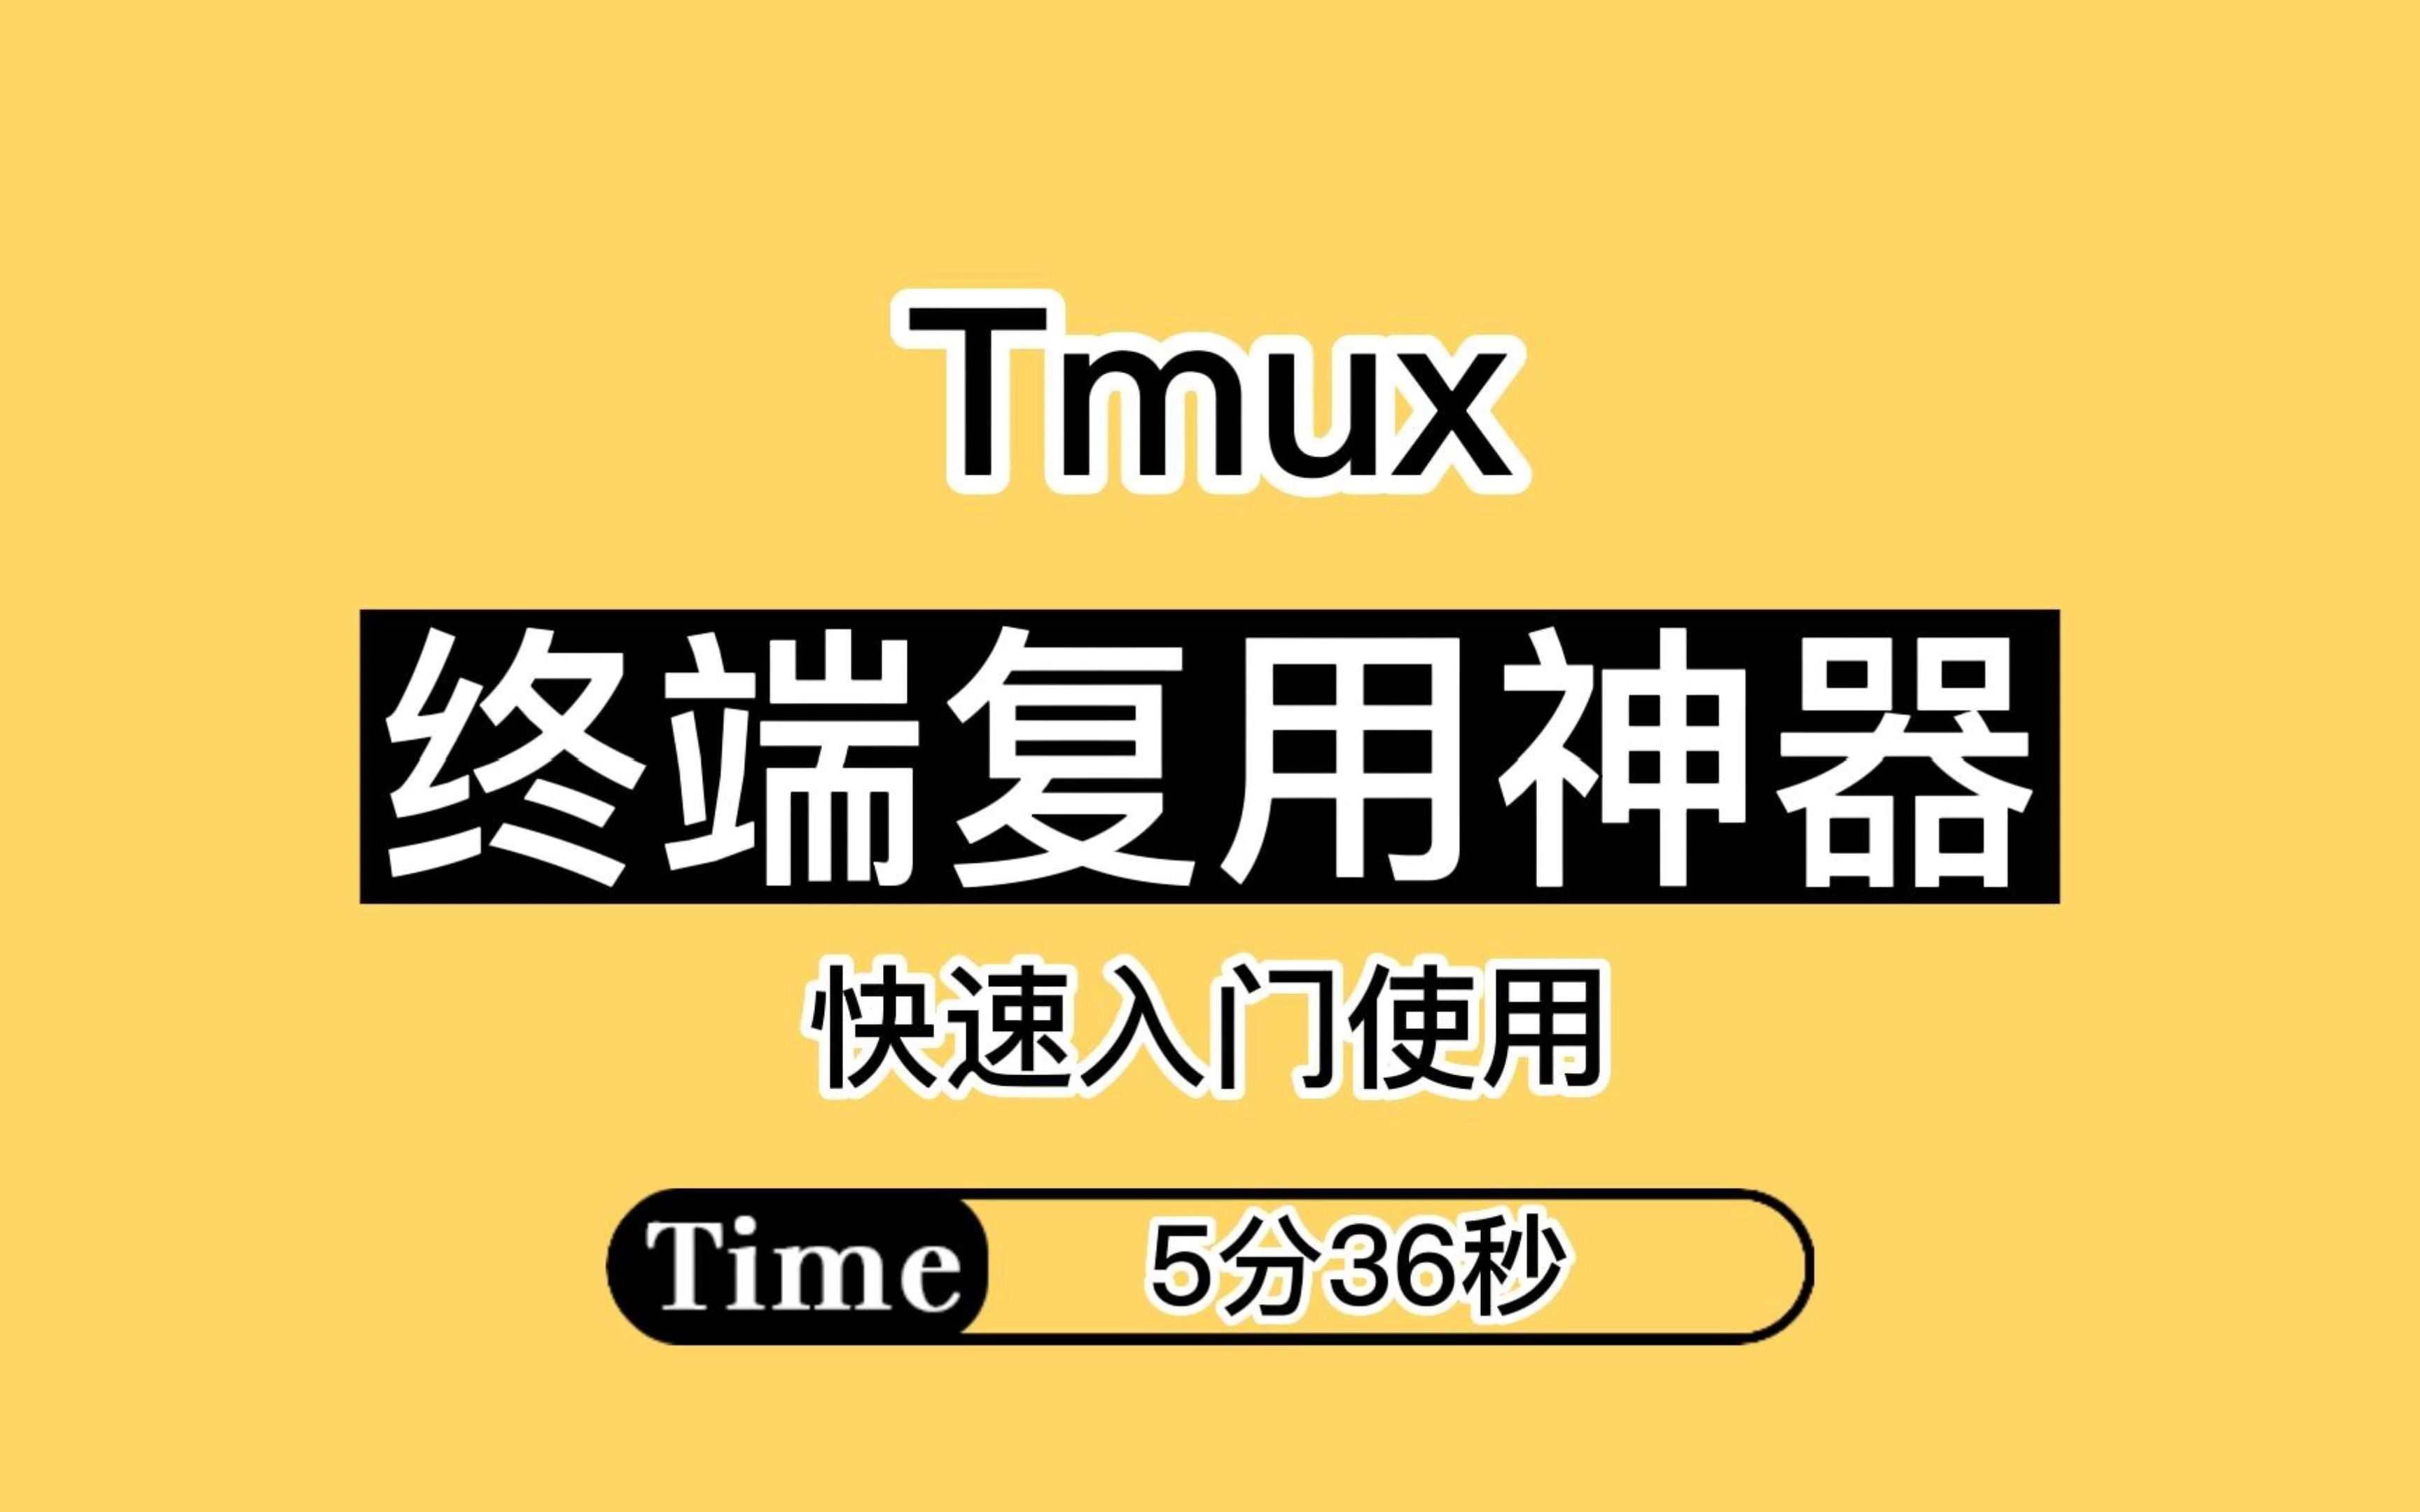 【程序员必备】终端复用神器Tmux快速入门